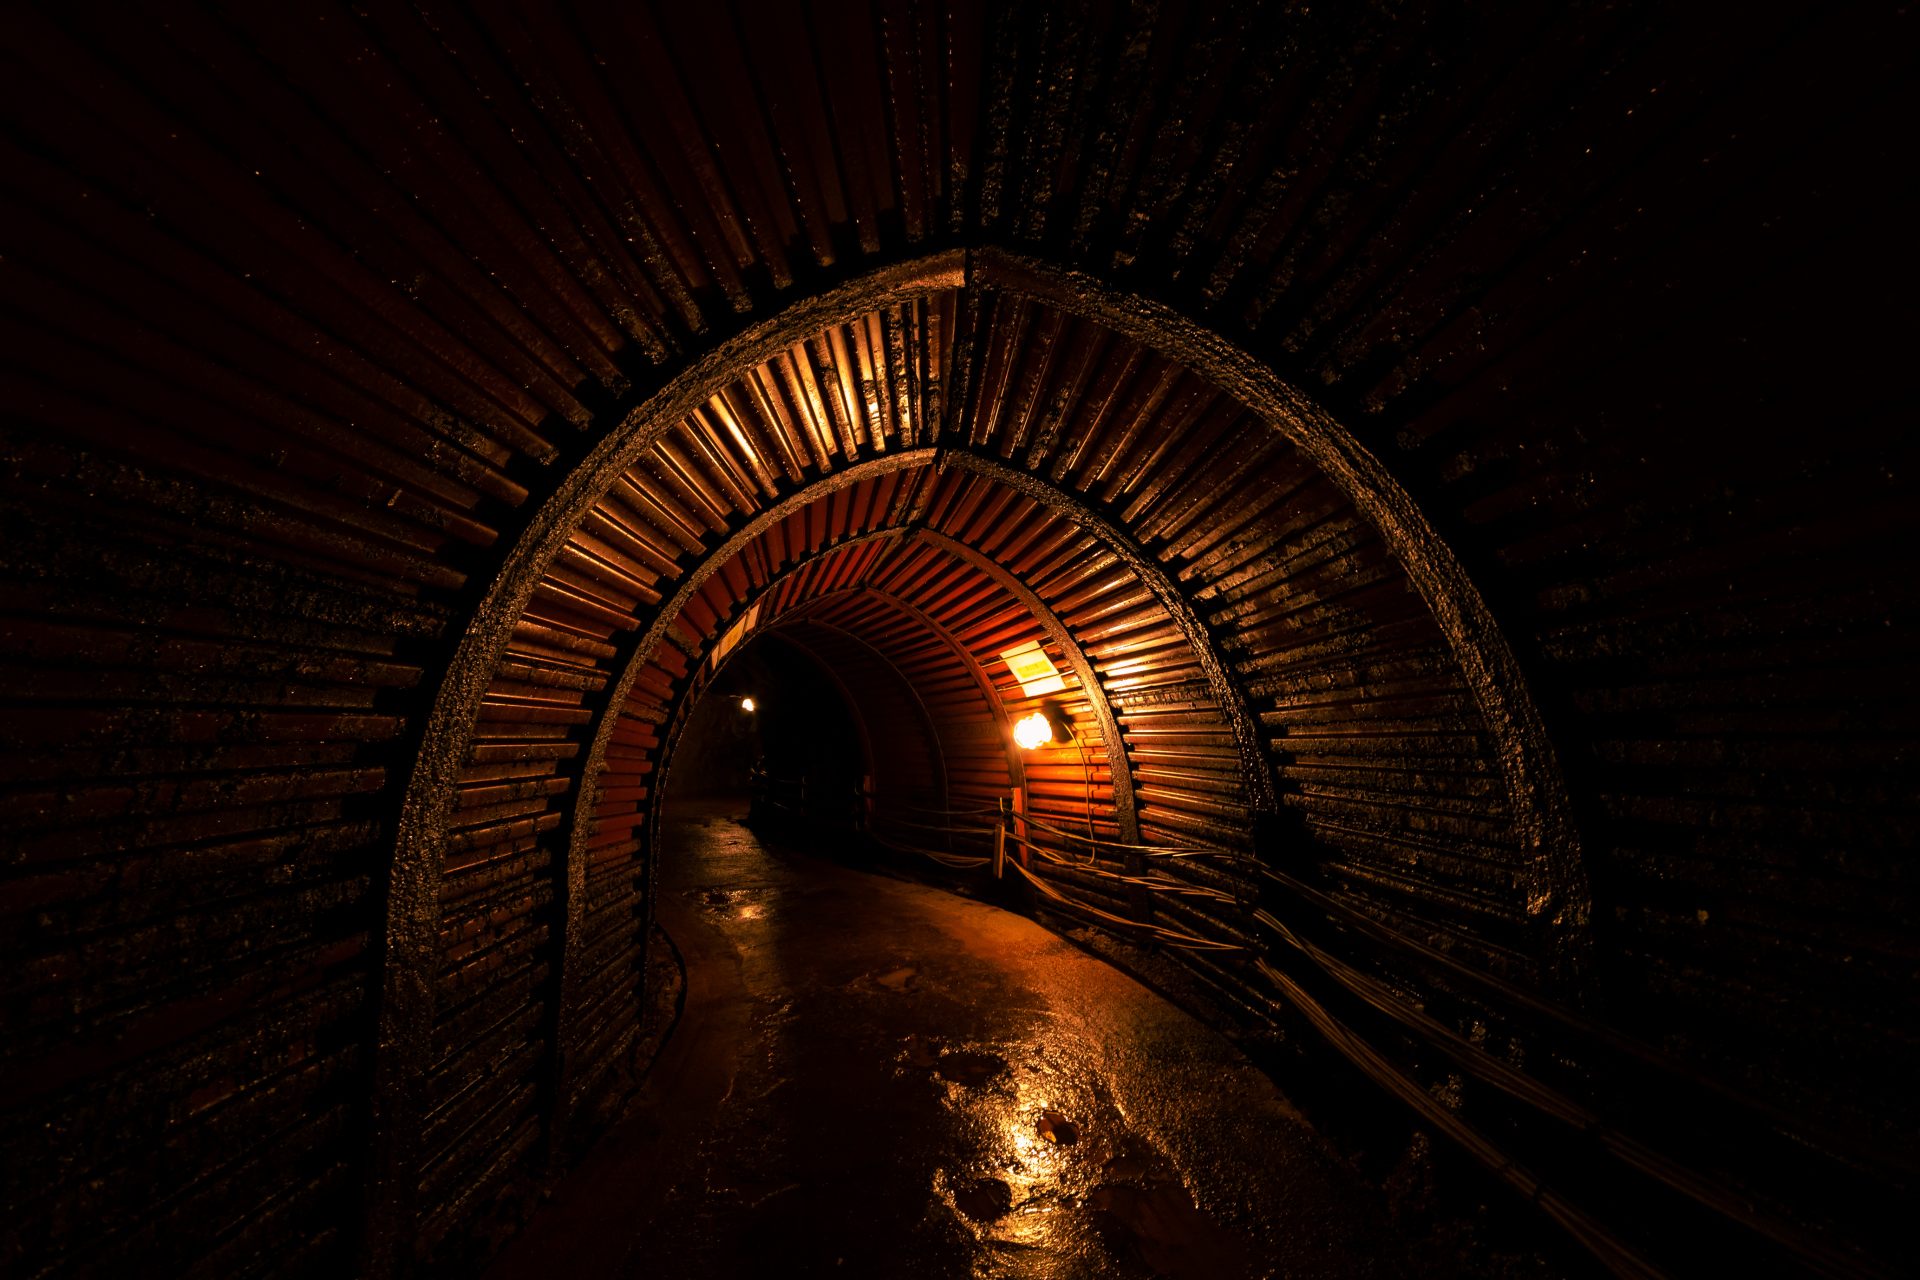 昏暗的隧道全年气温为13ºC（55°F），夏凉冬暖。